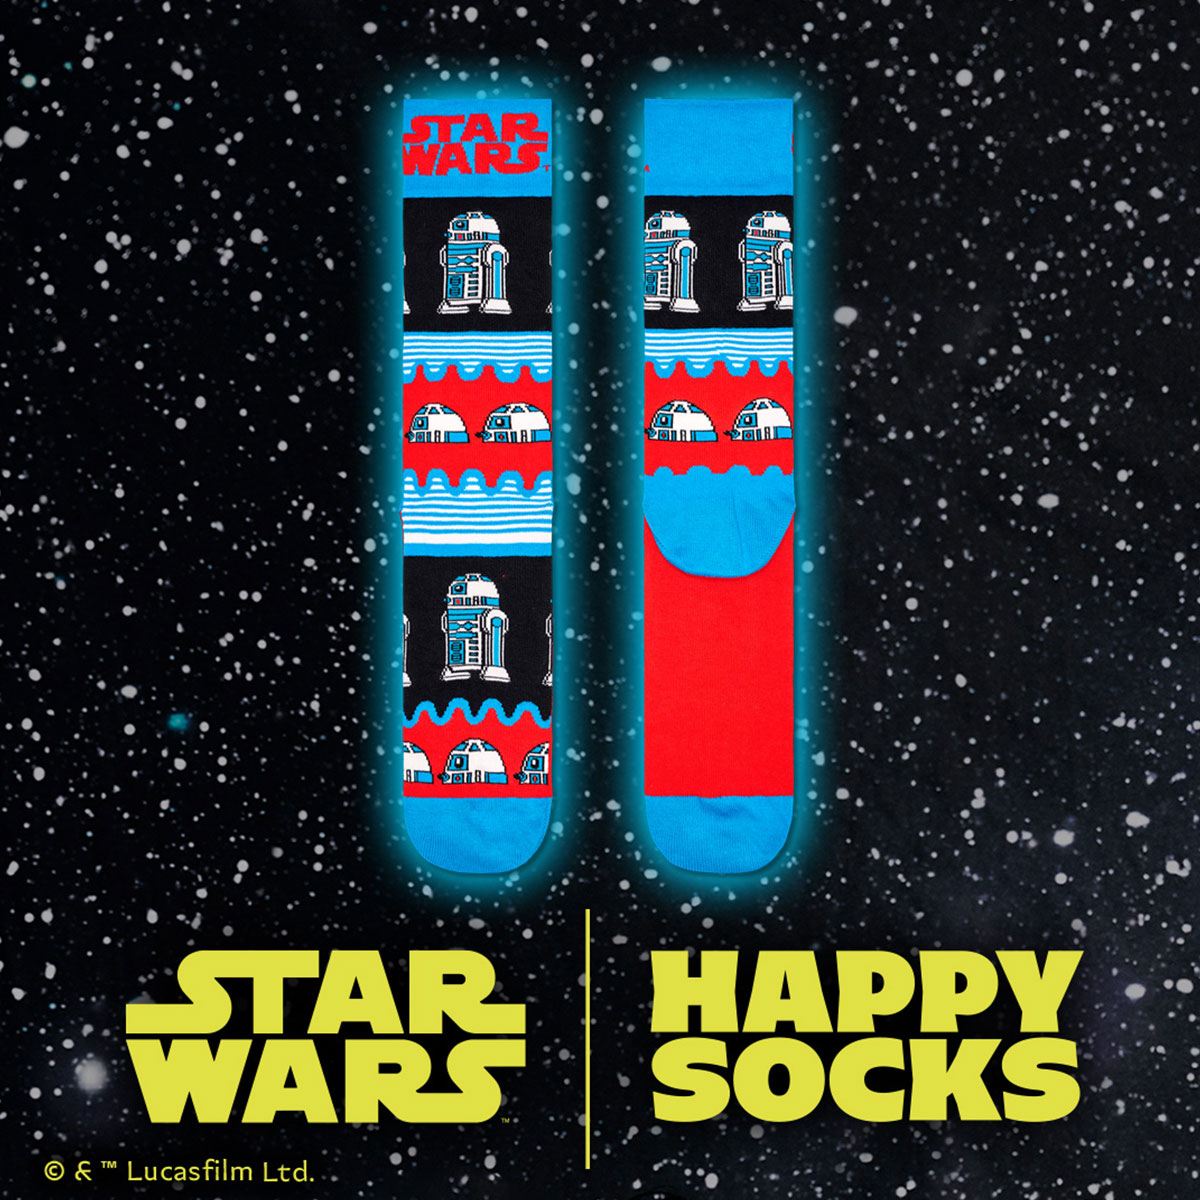 【23FW コラボ】 【Limited】 Happy Socks×Star Wars(スターウォーズ)　 R2-D2 Sock アールツーディーツー クルー丈 ソックス 靴下 ユニセックス メンズ ＆ レディース 14231010